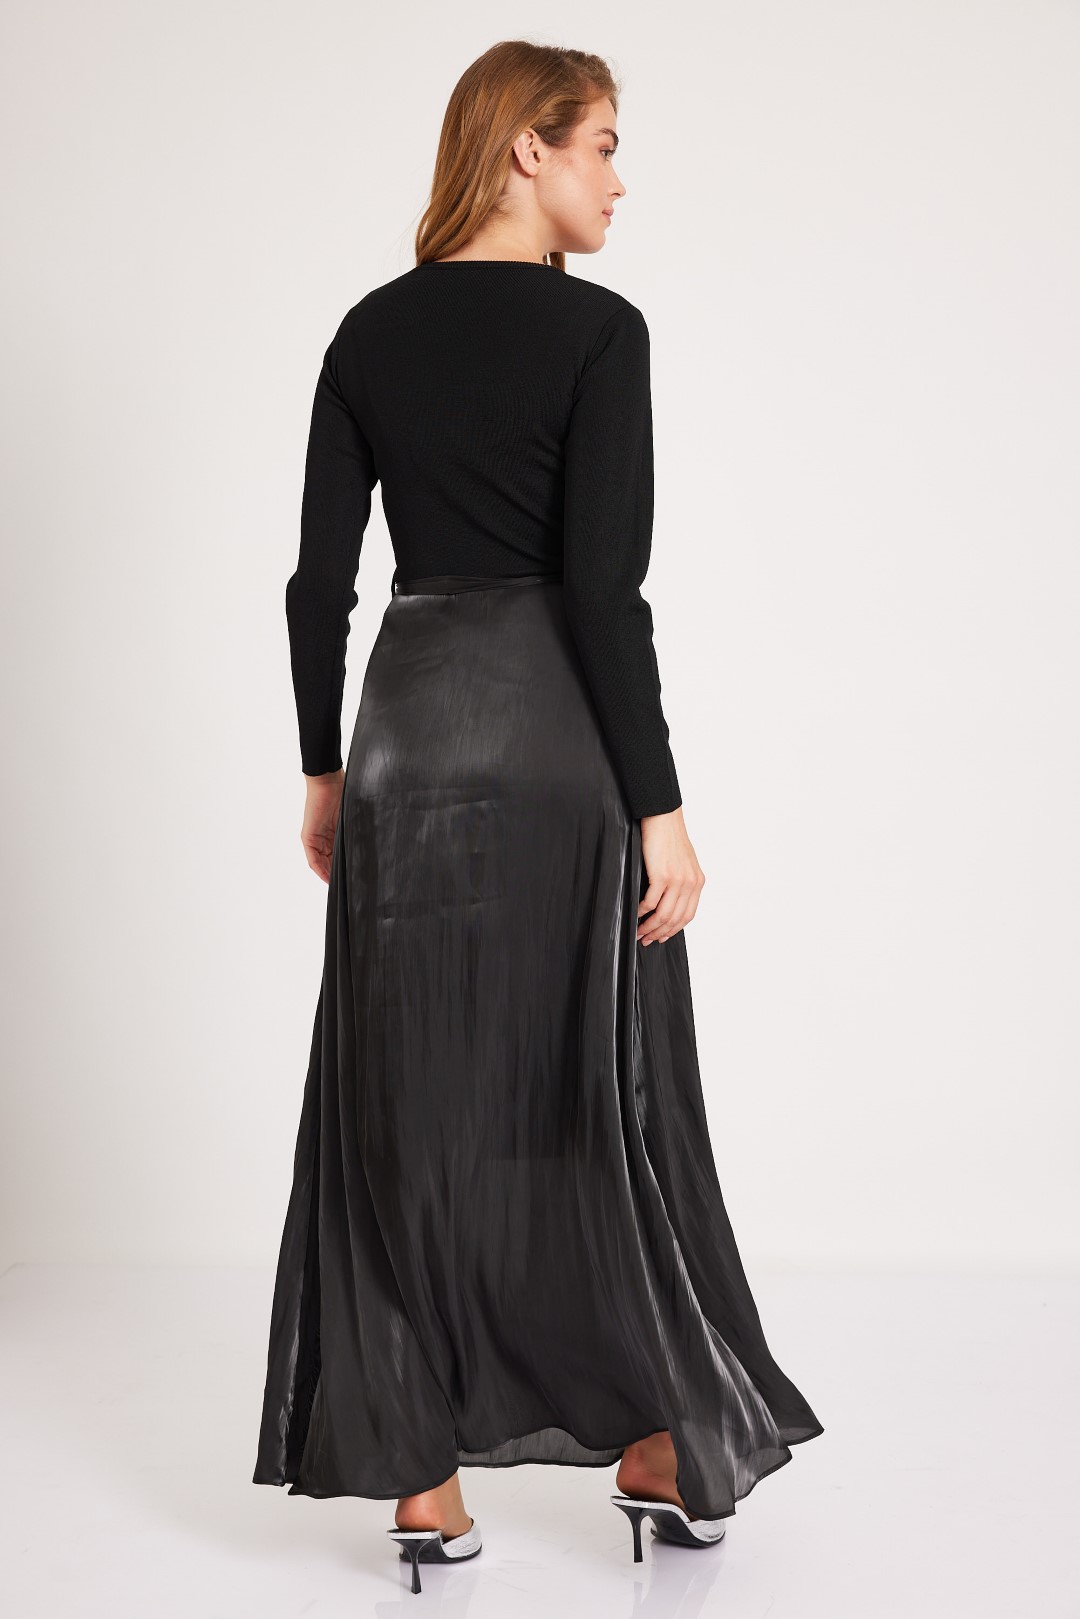 שמלה מטאלית שחורה